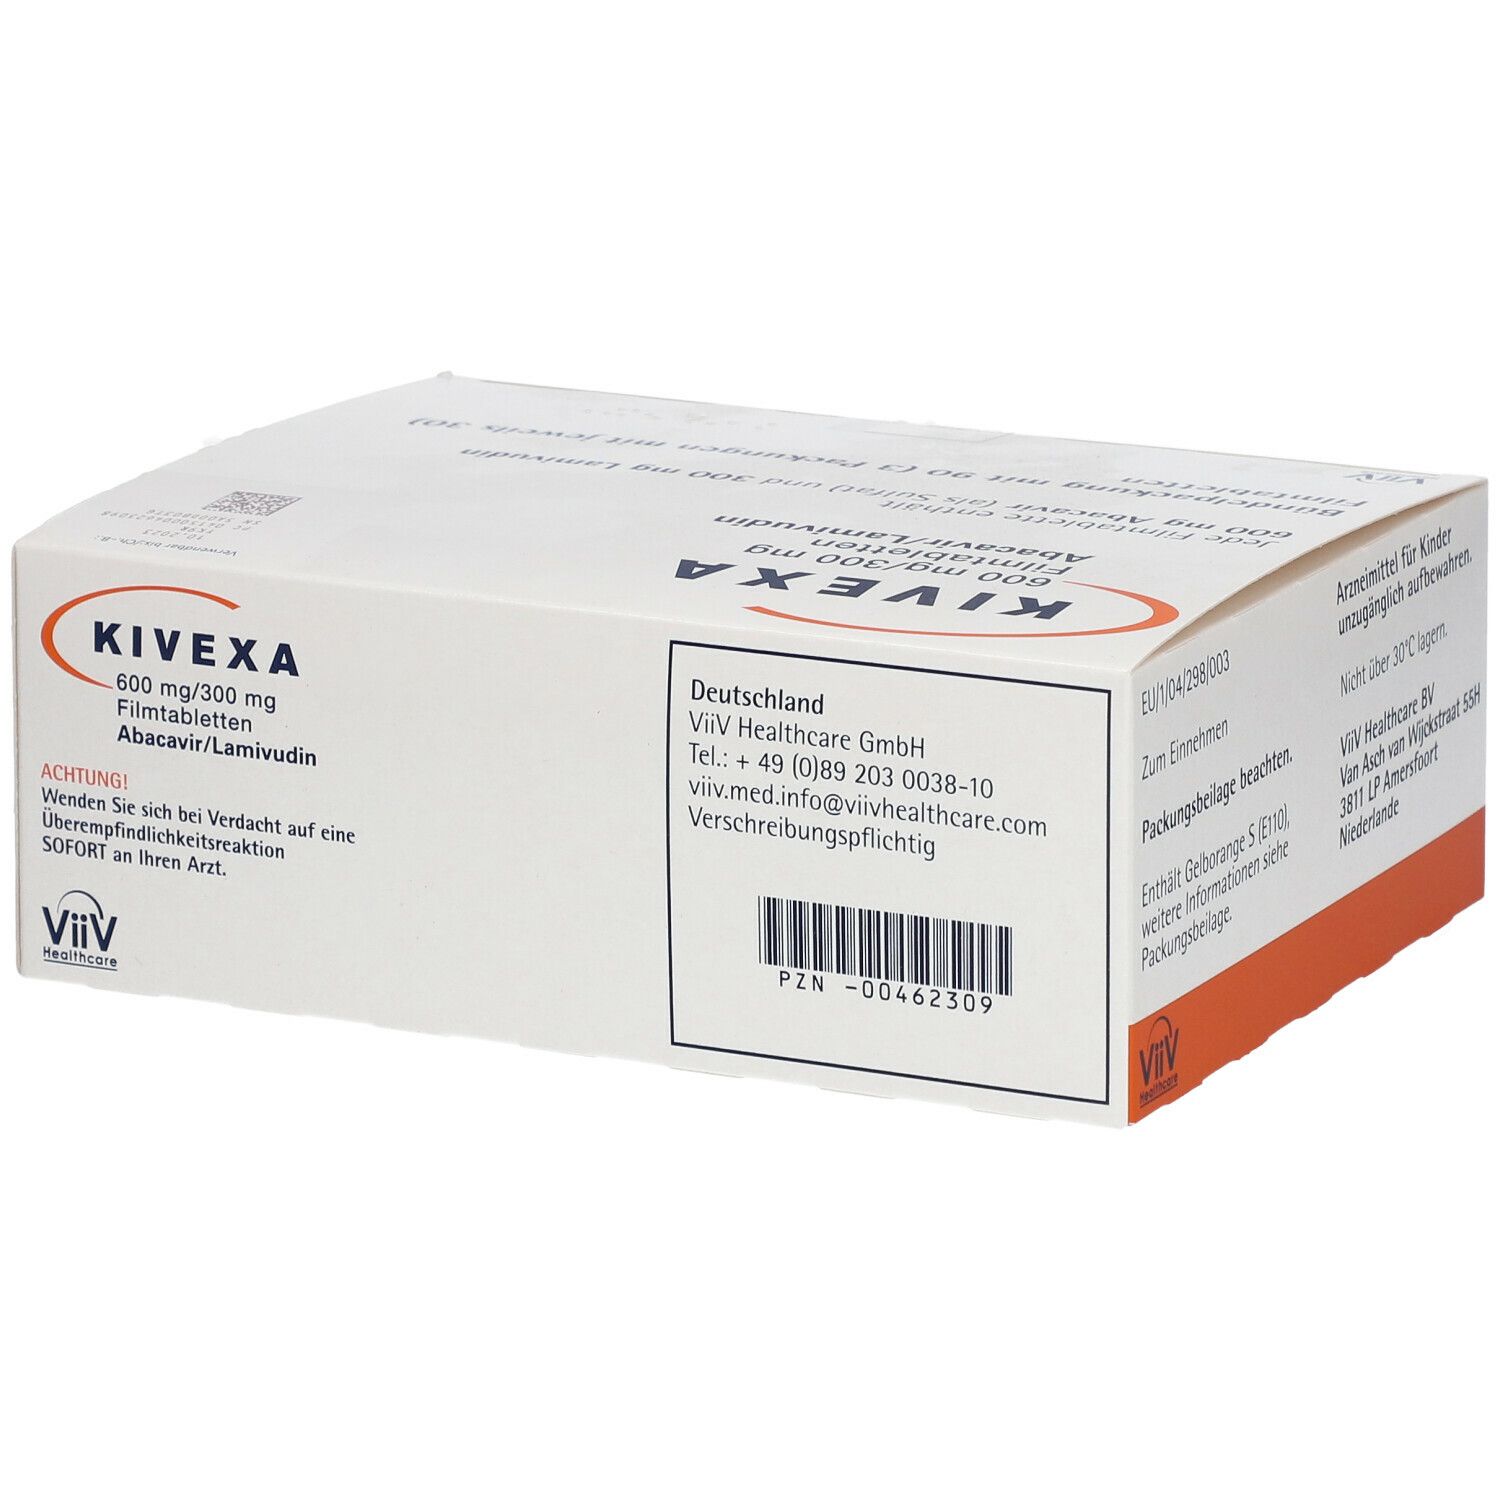 Kivexa® 600 mg/300 mg